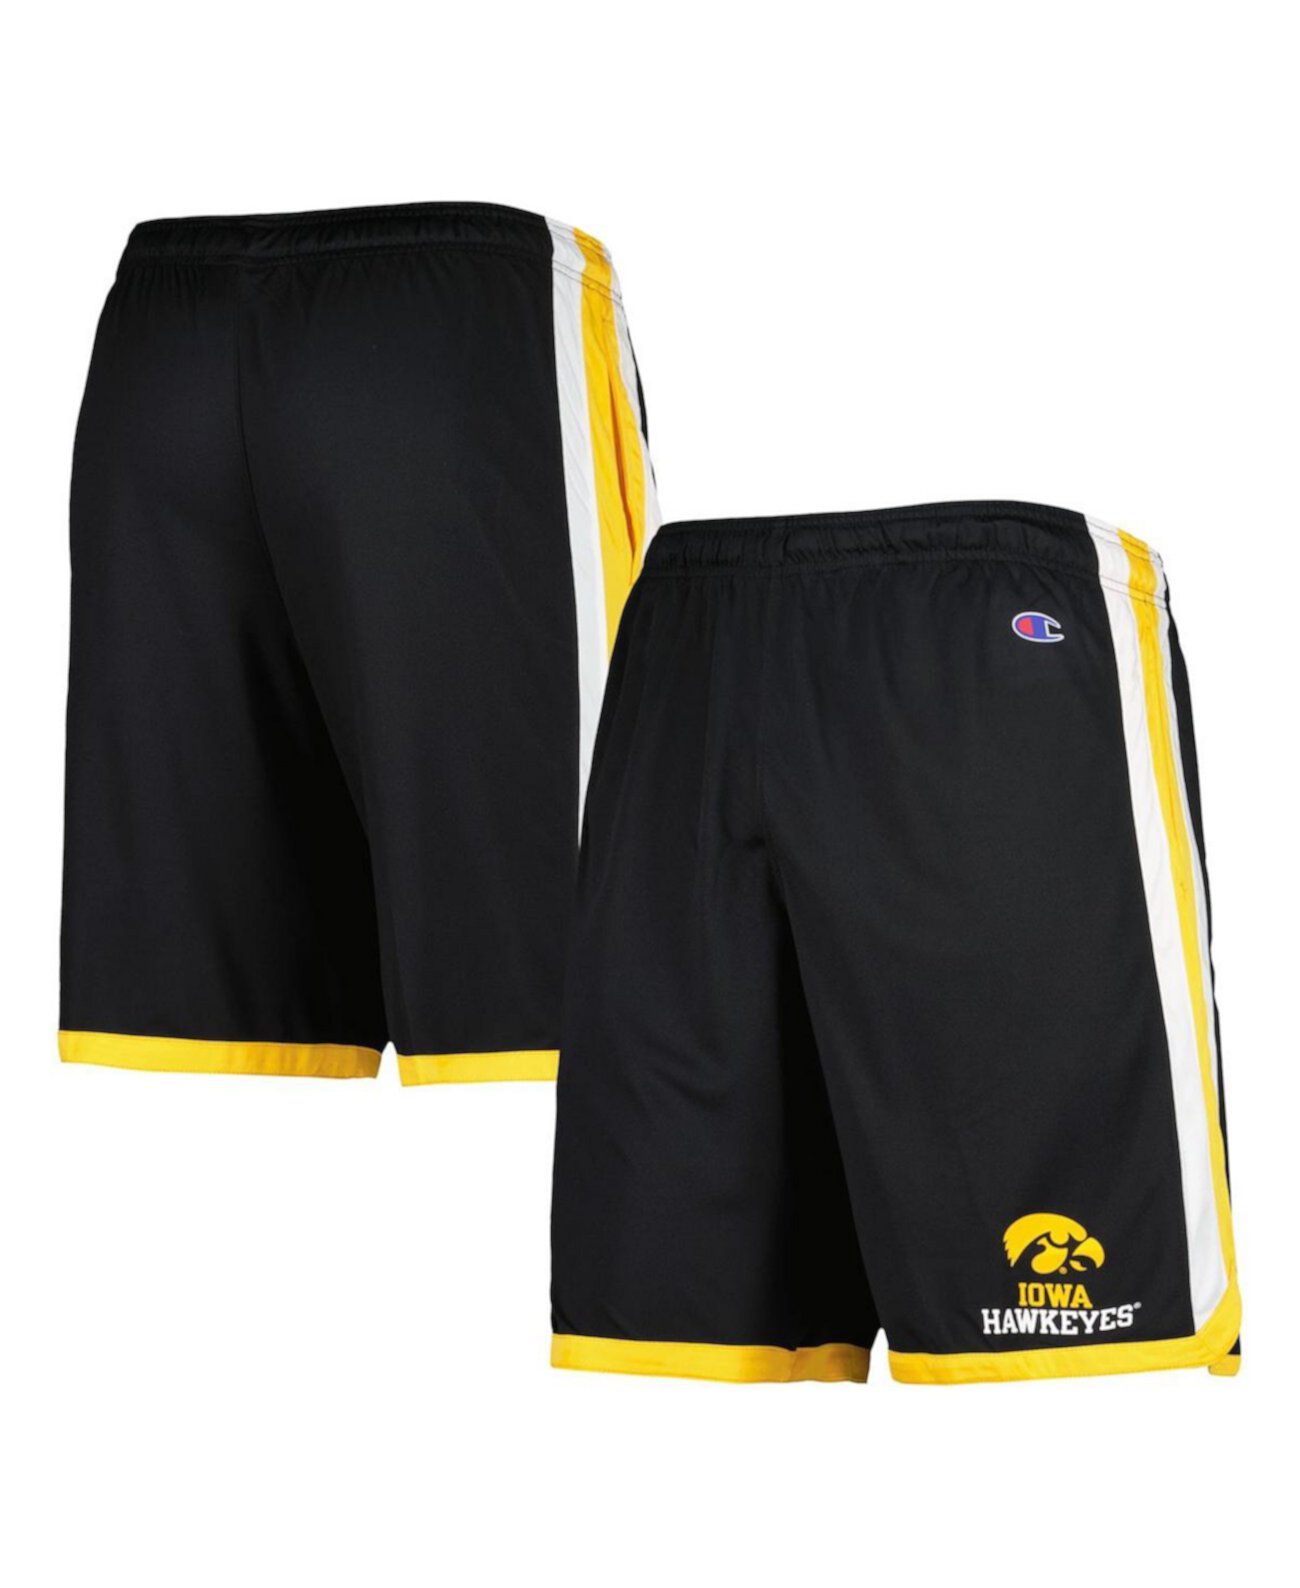 Мужские баскетбольные шорты Iowa Hawkeyes черного цвета Champion